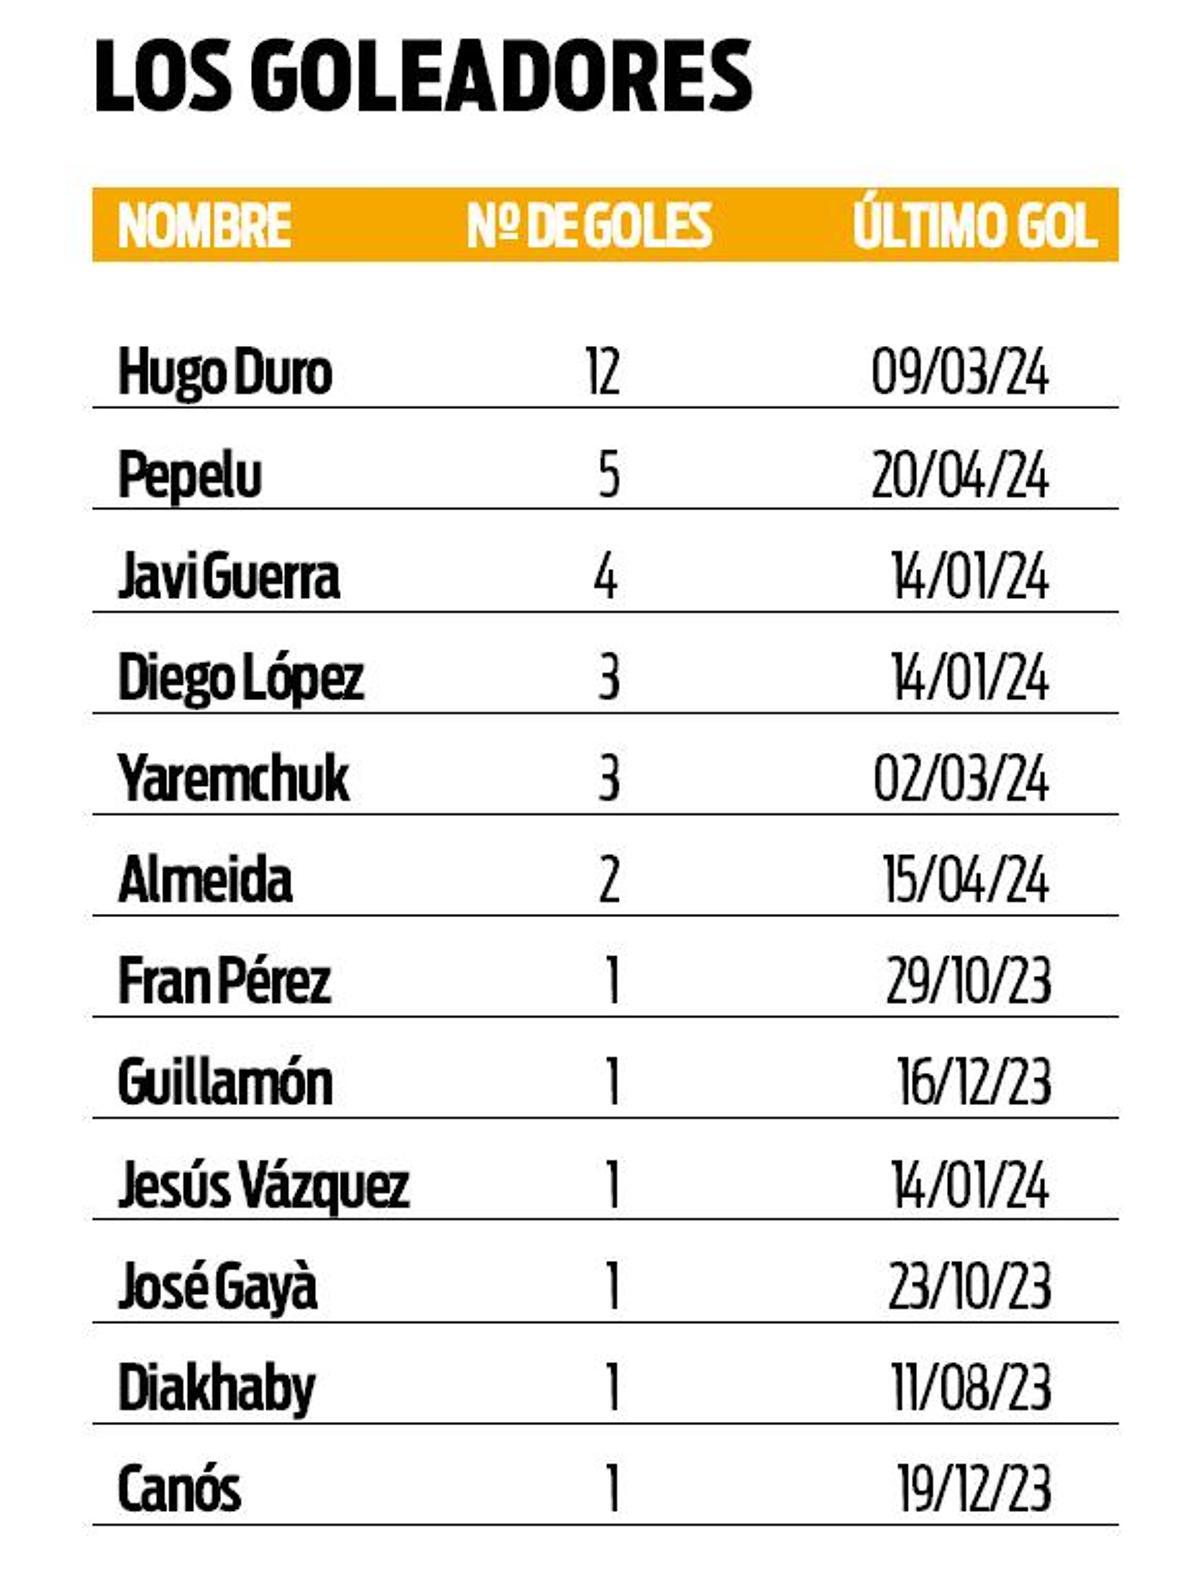 Tabla de goleadores del Valencia y su último tanto anotado